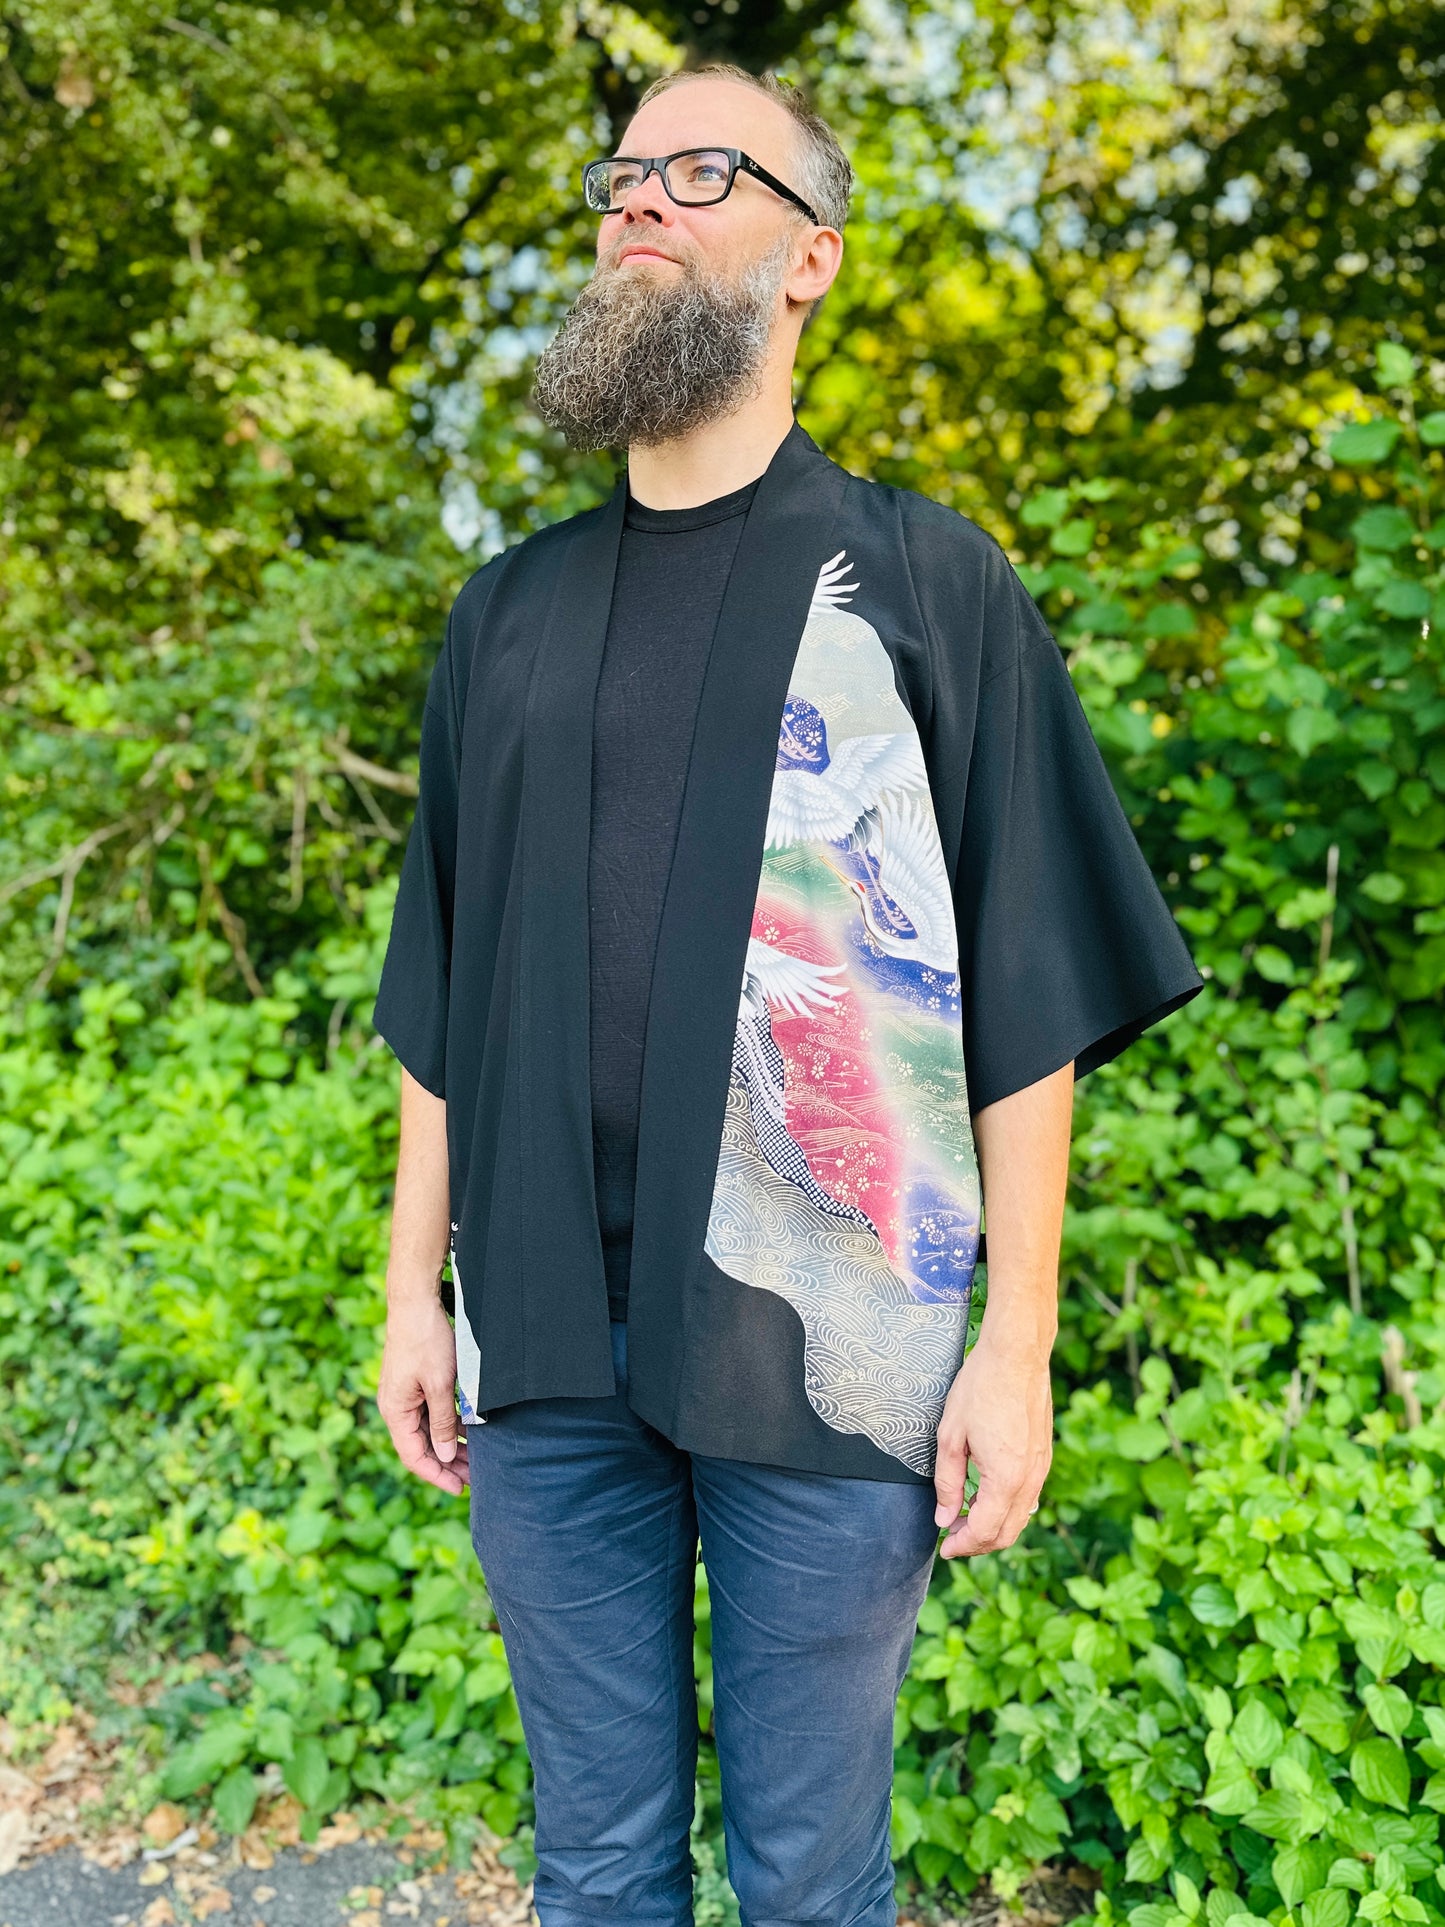 【Zwart, kranen in vlucht】 Happi jas ＜ Uitstekend ・ zijde ＞ voor mannen, voor vrouwen, Japanse kimono, Japan unisexese kleding, unisex, Japanse geschenken, originele ontwerpen